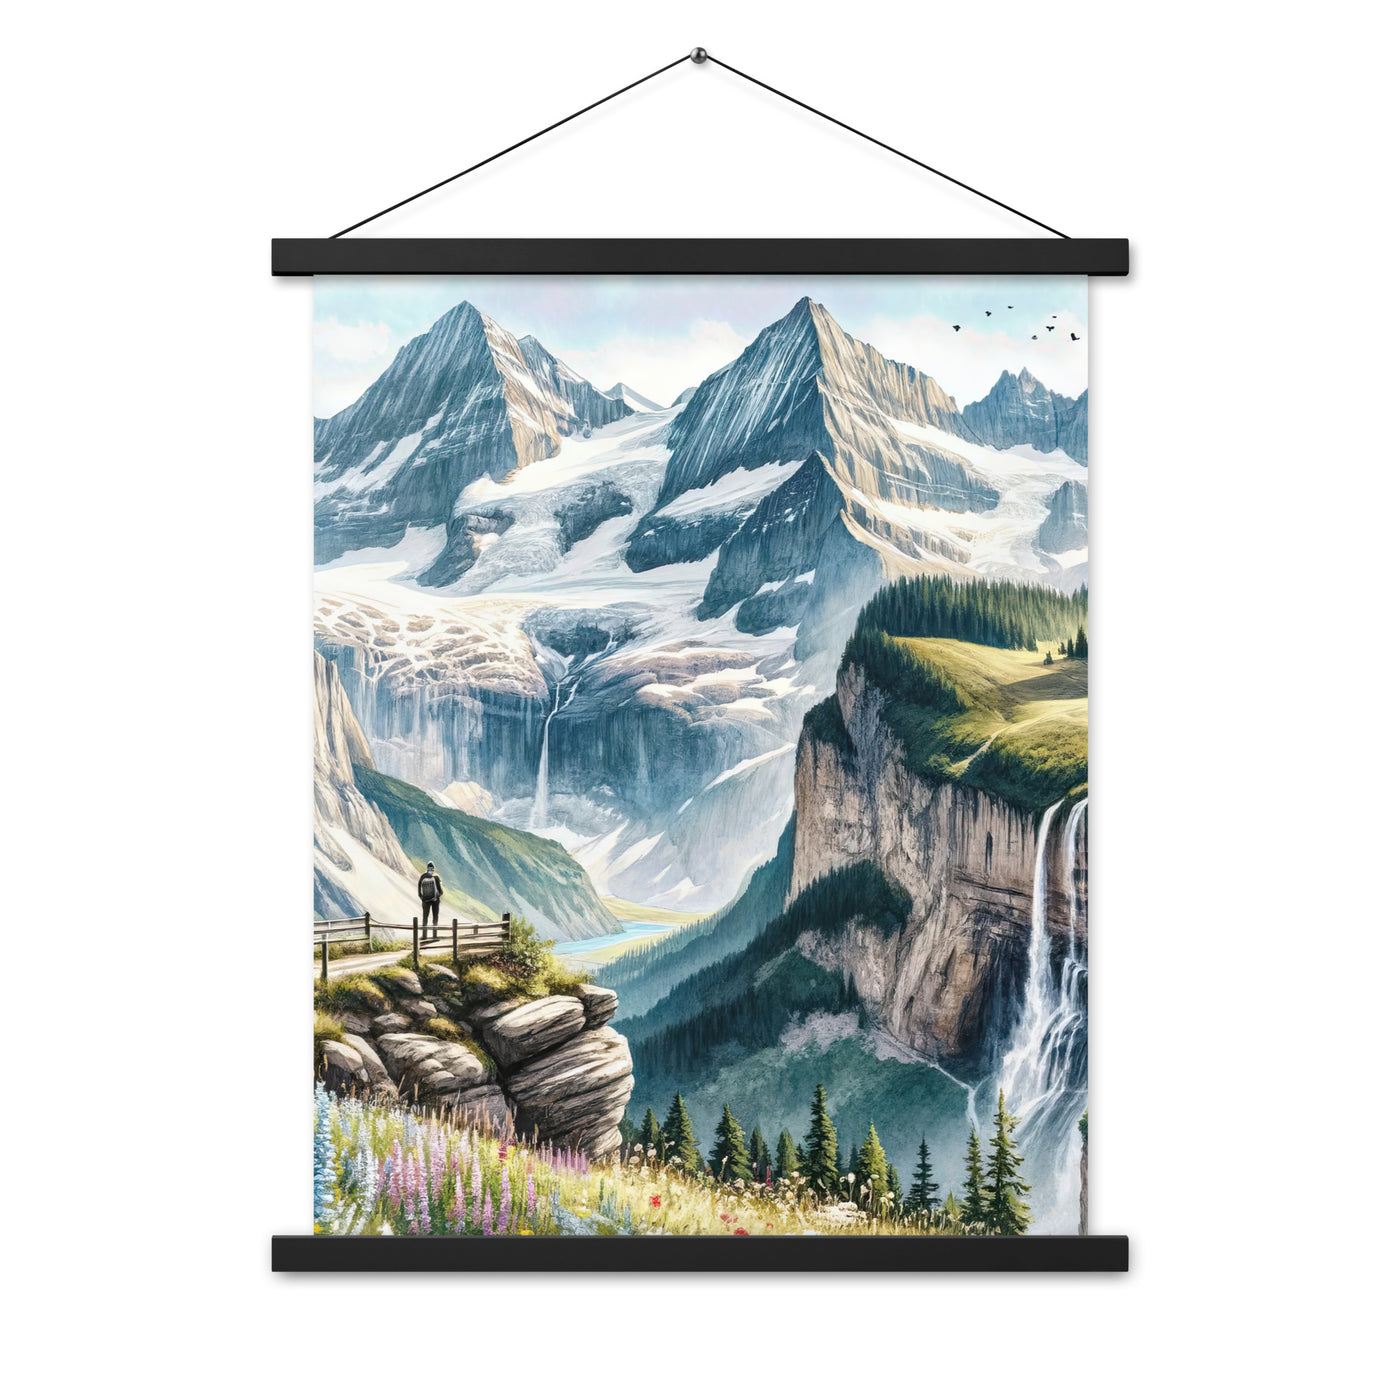 Aquarell-Panoramablick der Alpen mit schneebedeckten Gipfeln, Wasserfällen und Wanderern - Premium Poster mit Aufhängung wandern xxx yyy zzz 45.7 x 61 cm